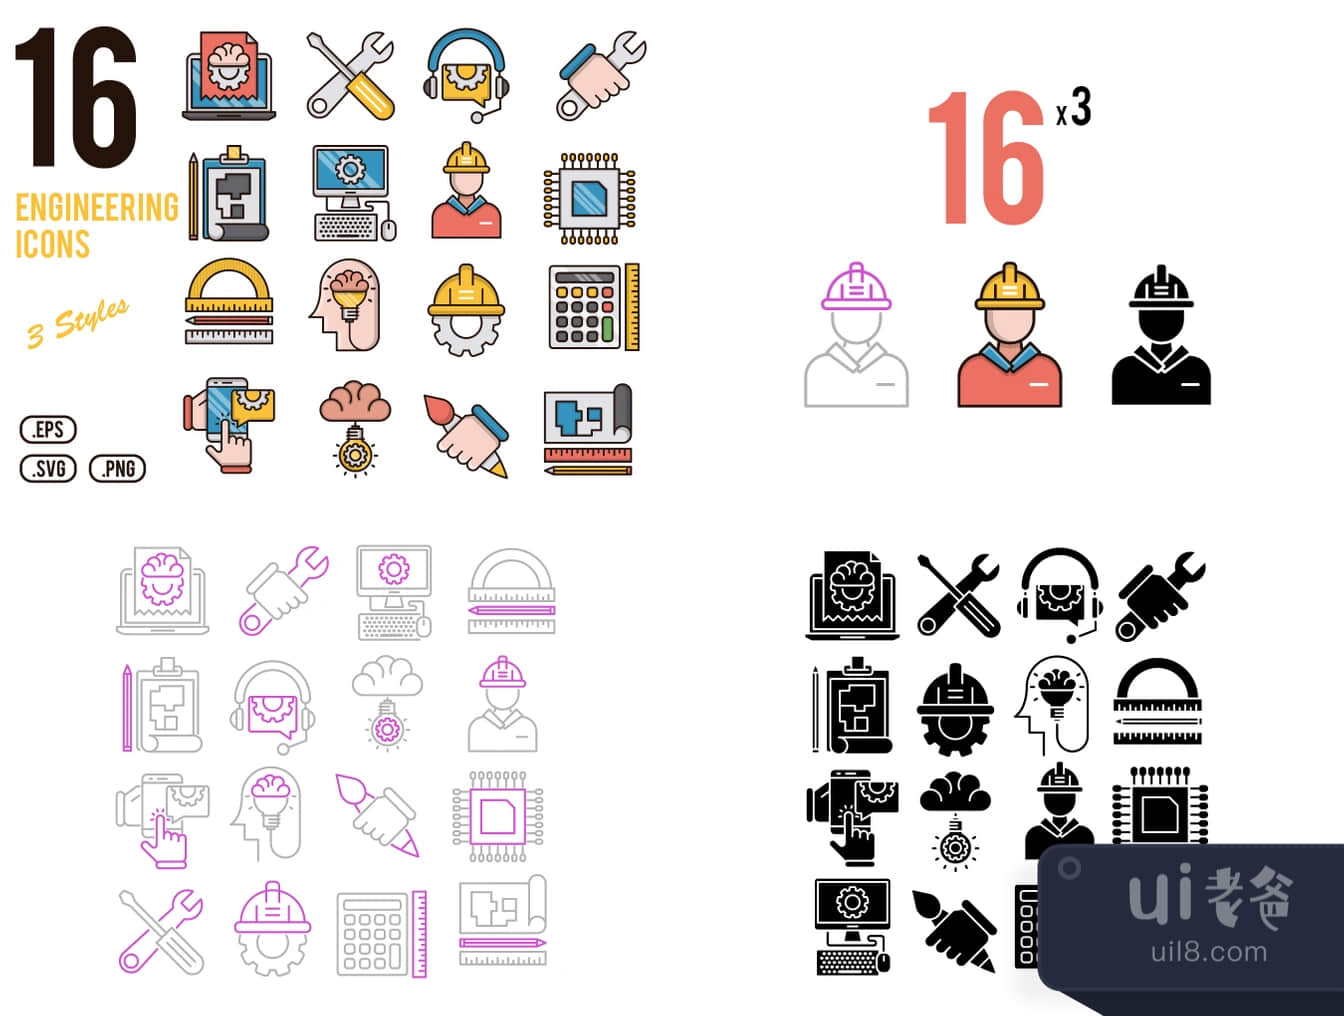 16个工程图标 (16 Engineering Icons)插图